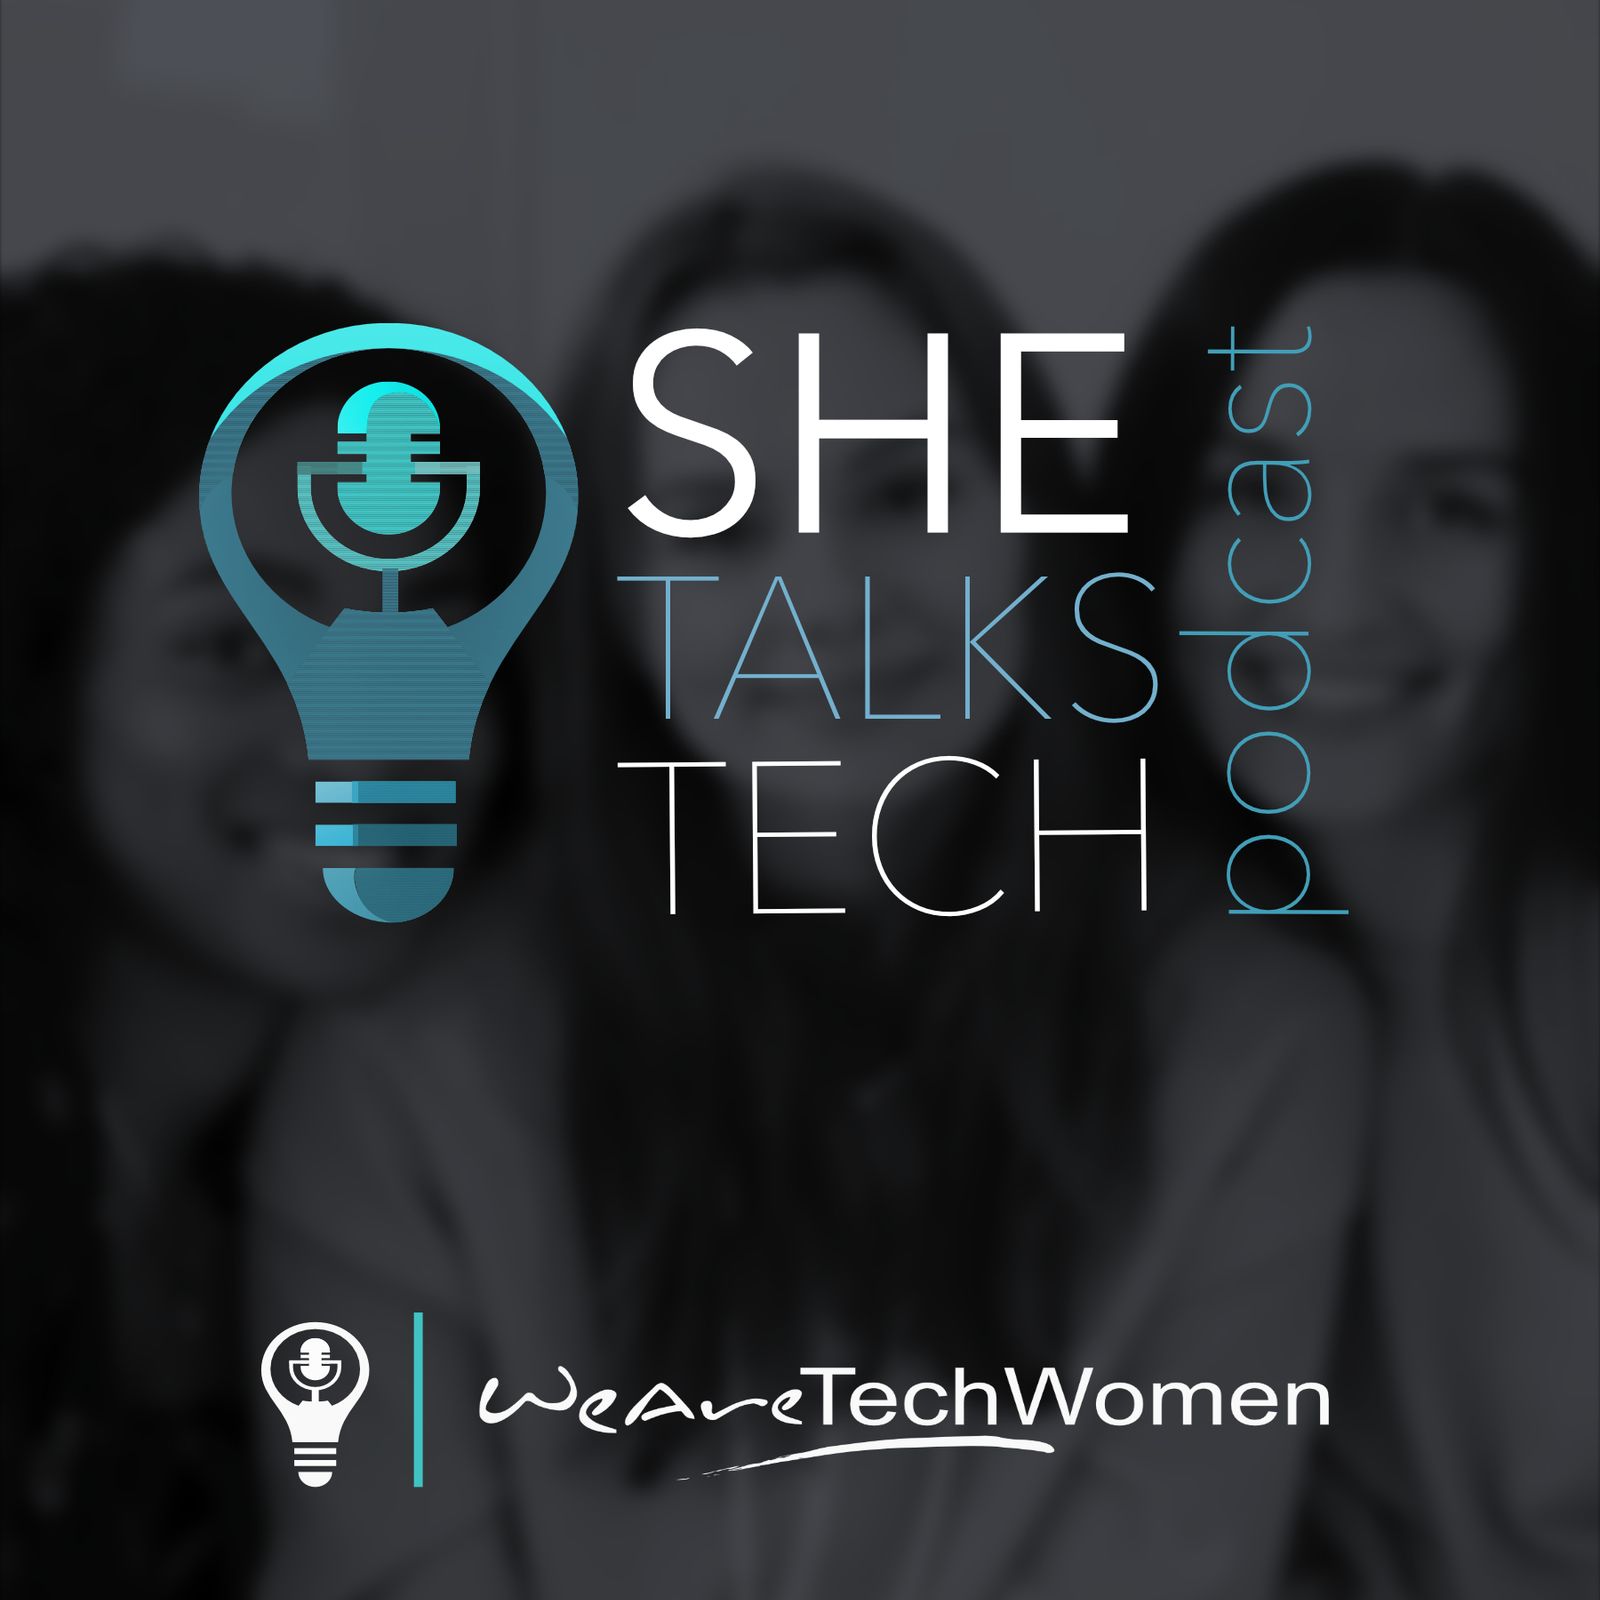 She Talks Tech: from WeAreTechWomen